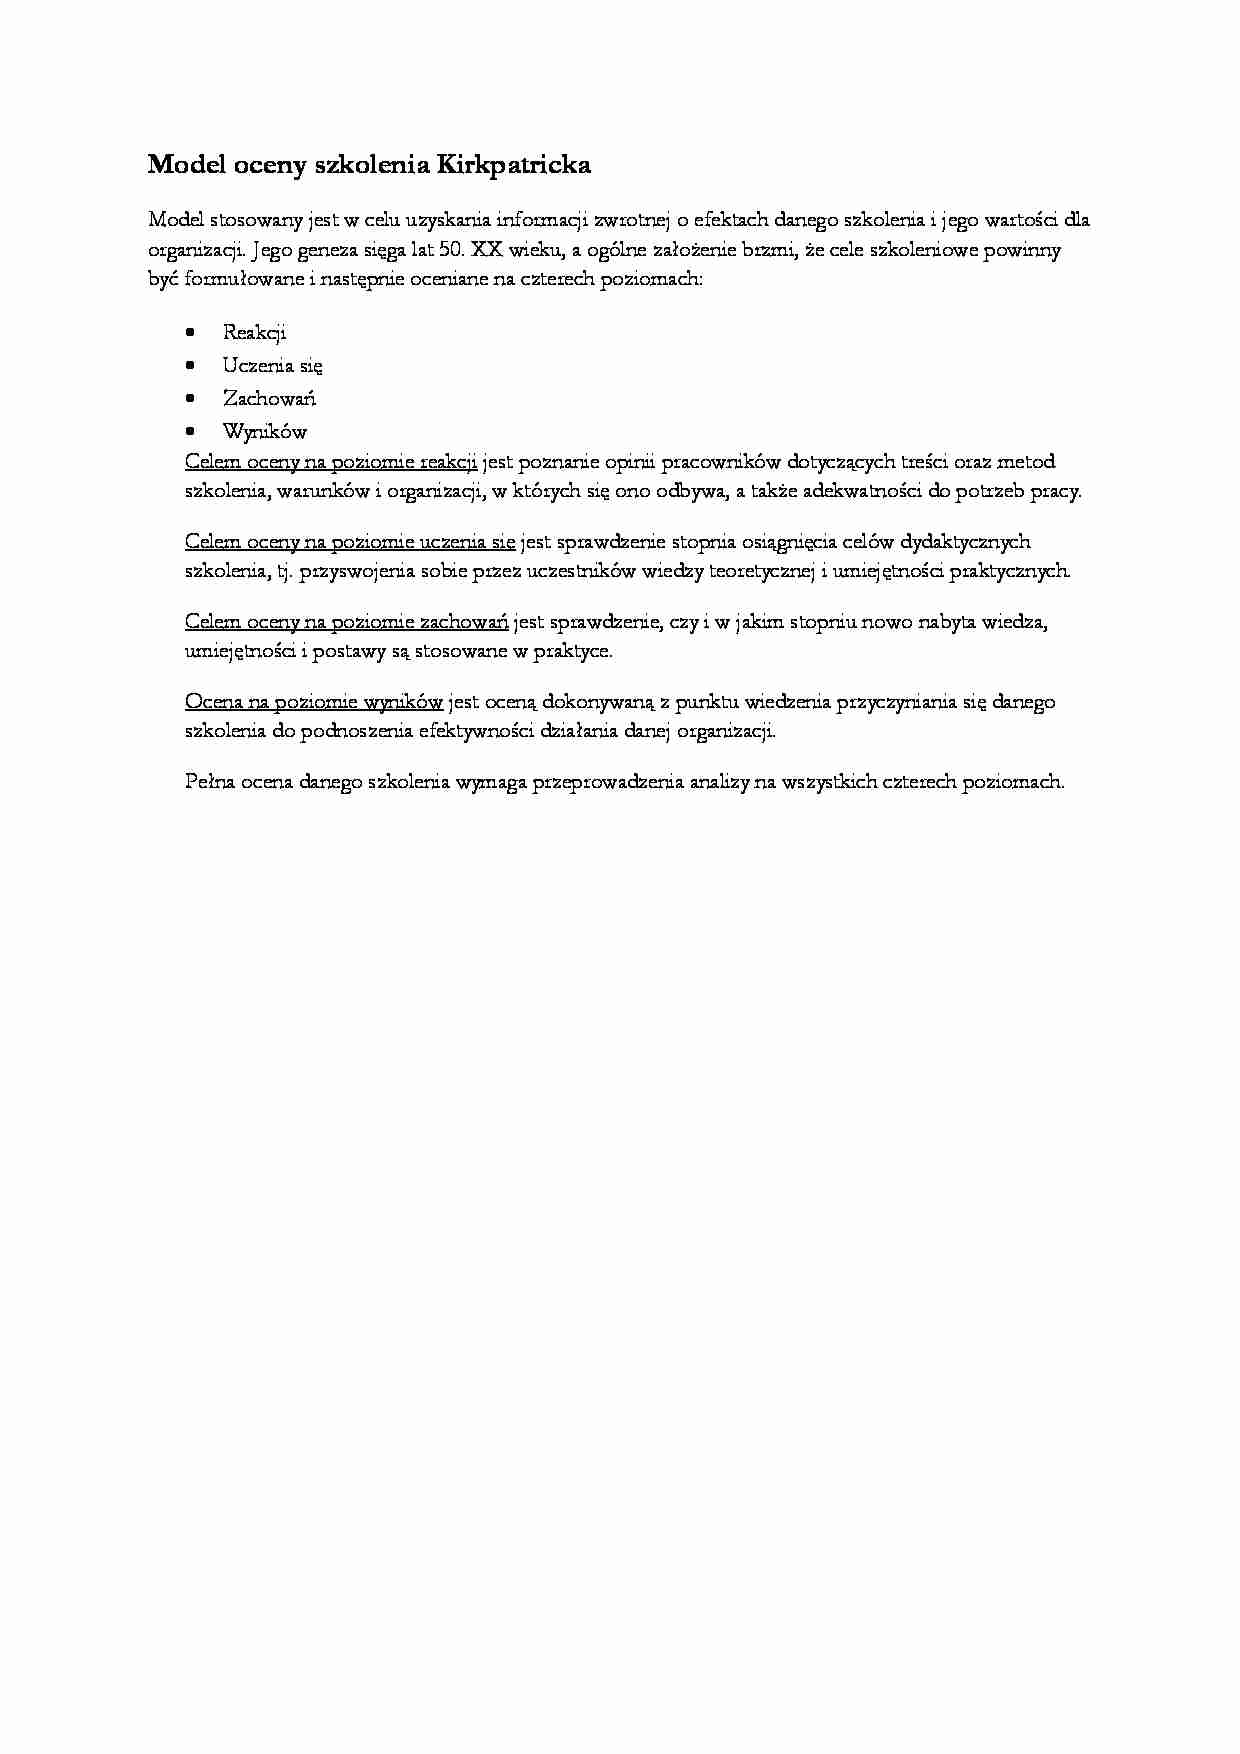 Model oceny szkolenia Kirkpatricka - strona 1